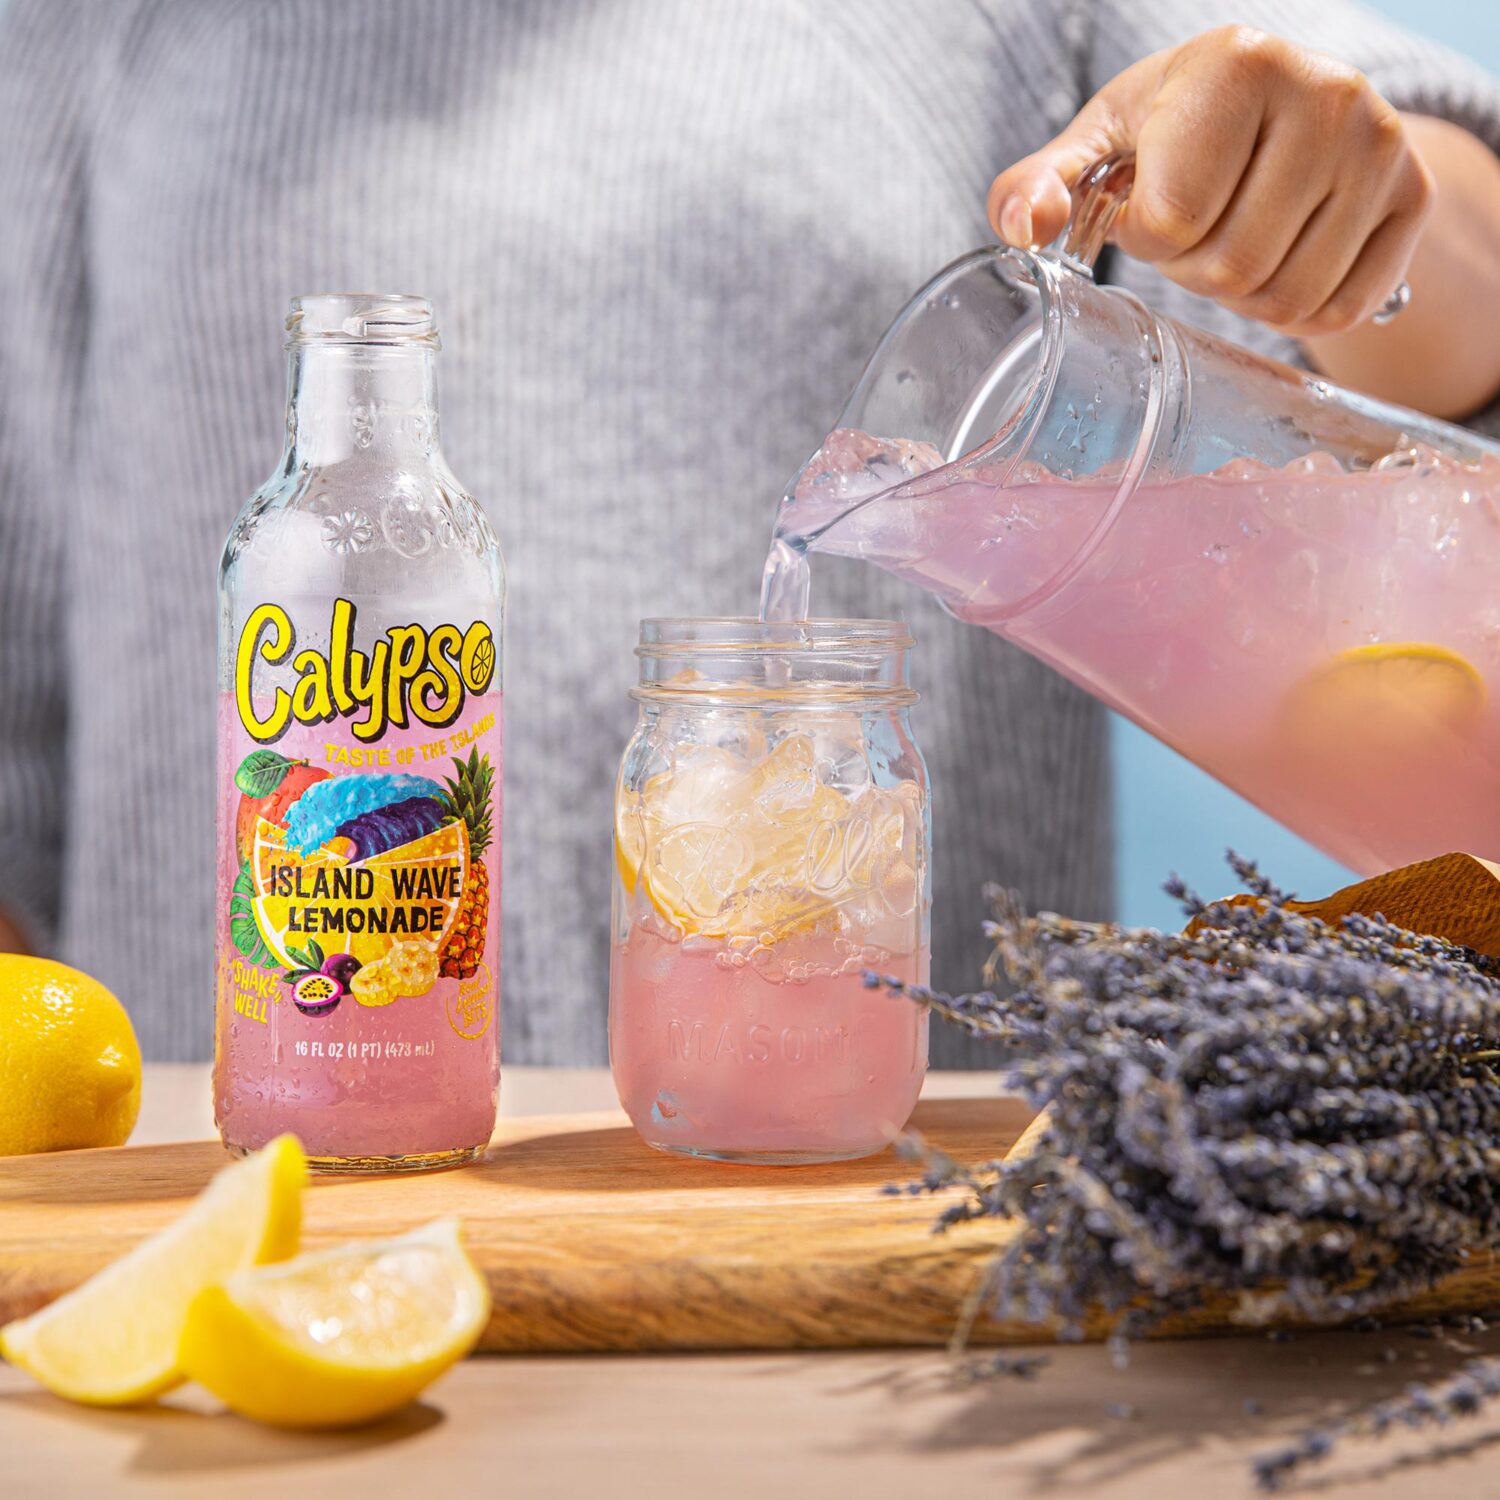 A person pouring Calypso Island Wave Lemonade into a glass.